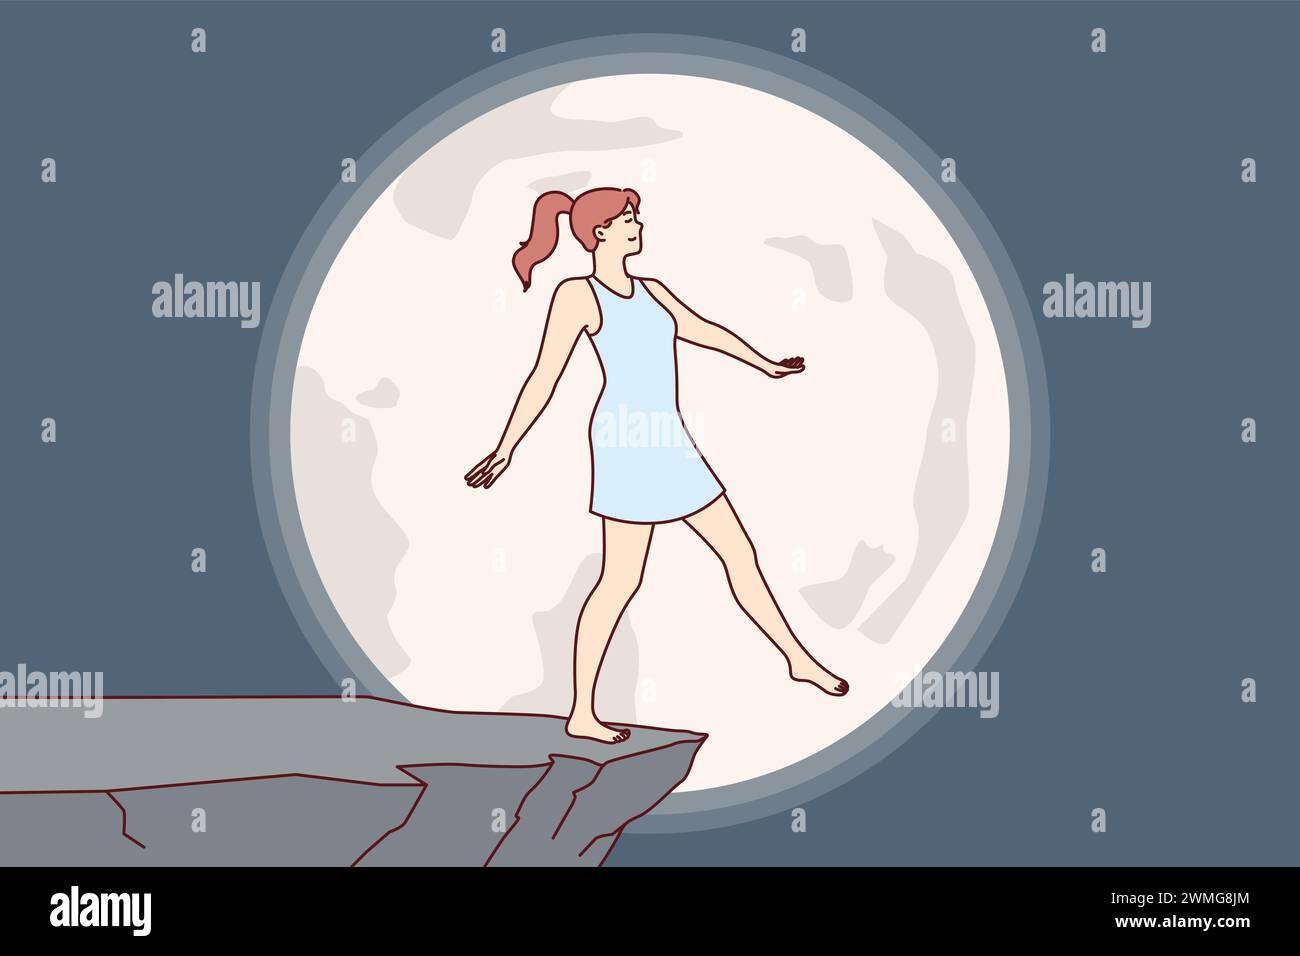 La donna sperimenta un incubo di notte, immaginando di cadere dalla scogliera durante la luna piena, a causa della presenza di sindrome da sonnambulismo. Incubo di giovani a rischio di lesioni dovute a disturbi psicologici Illustrazione Vettoriale